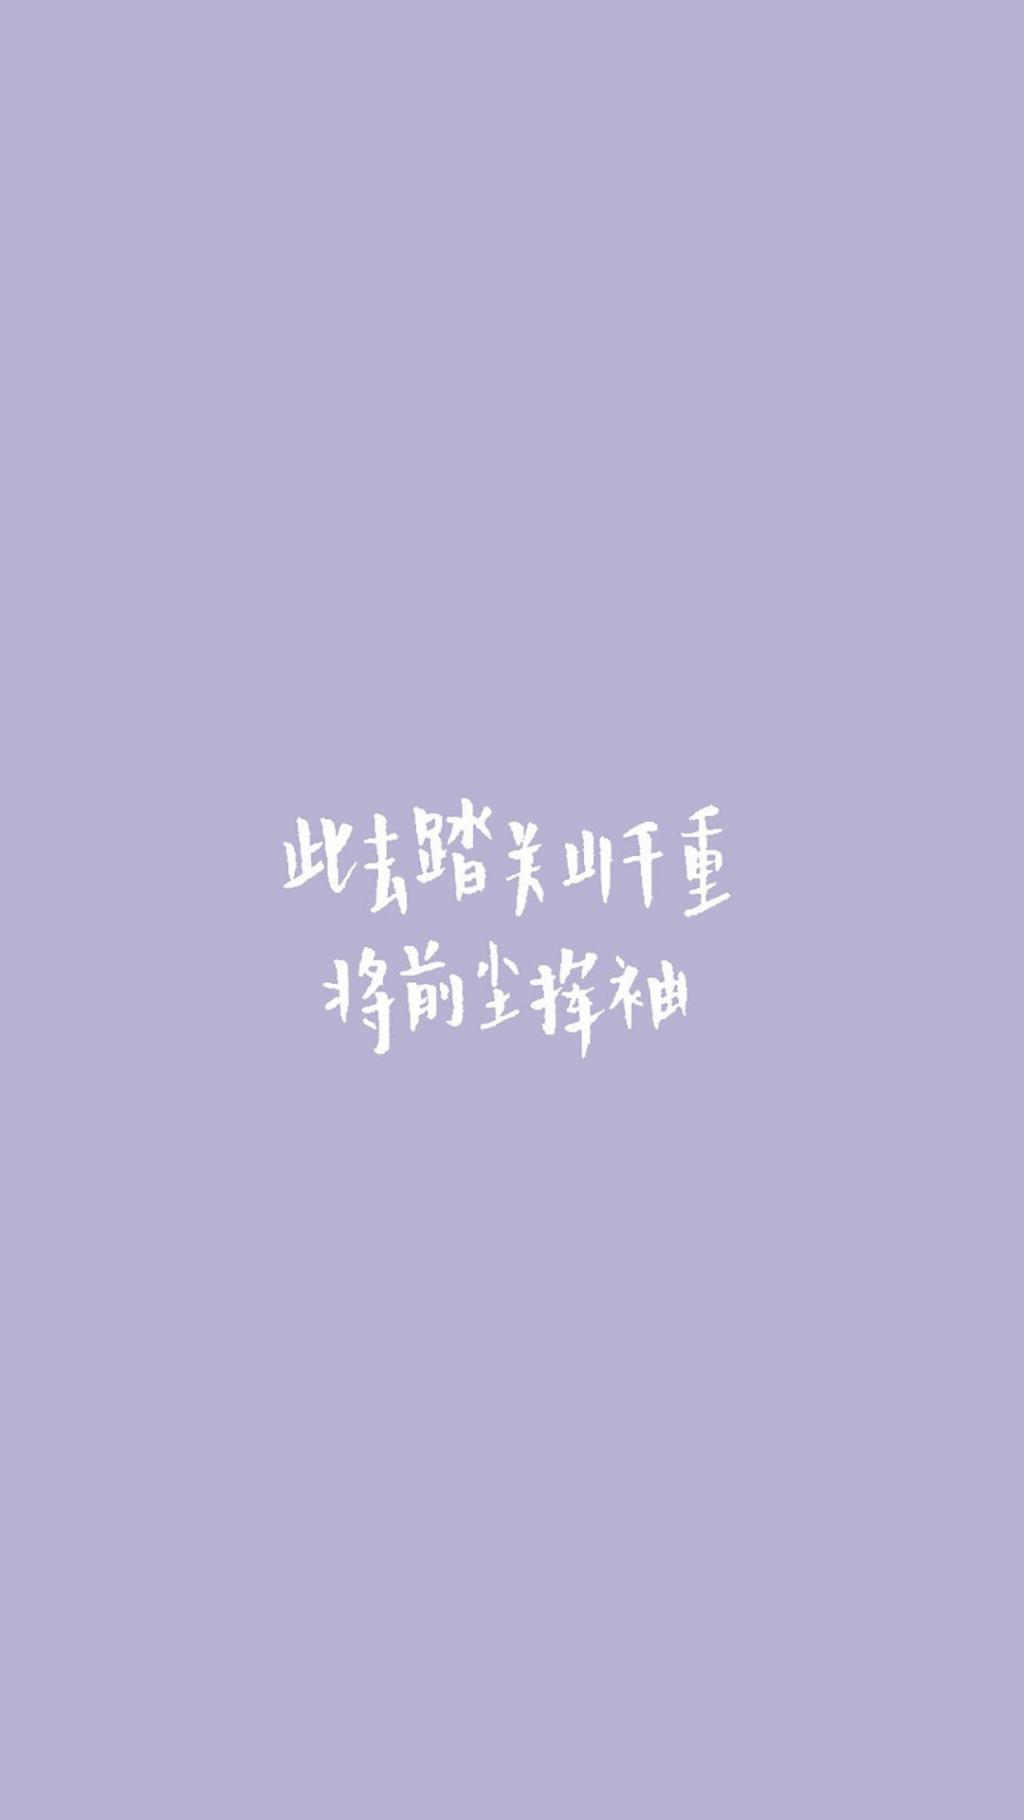 文艺情话紫色背景壁纸